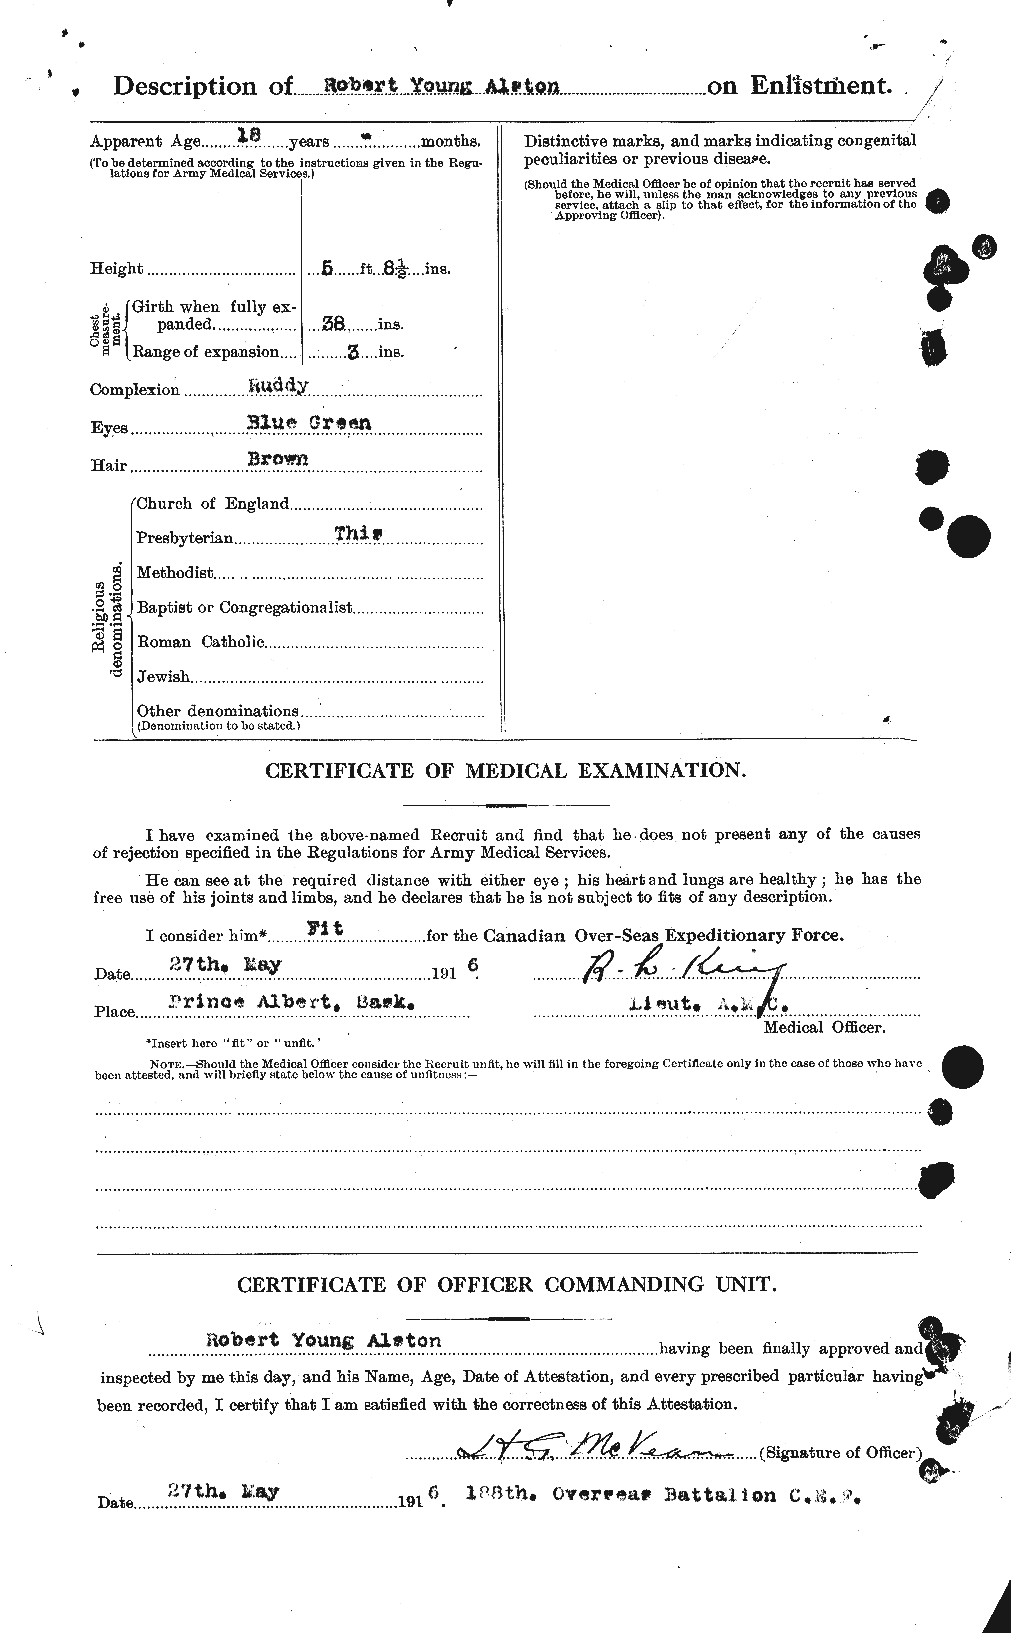 Dossiers du Personnel de la Première Guerre mondiale - CEC 208162b